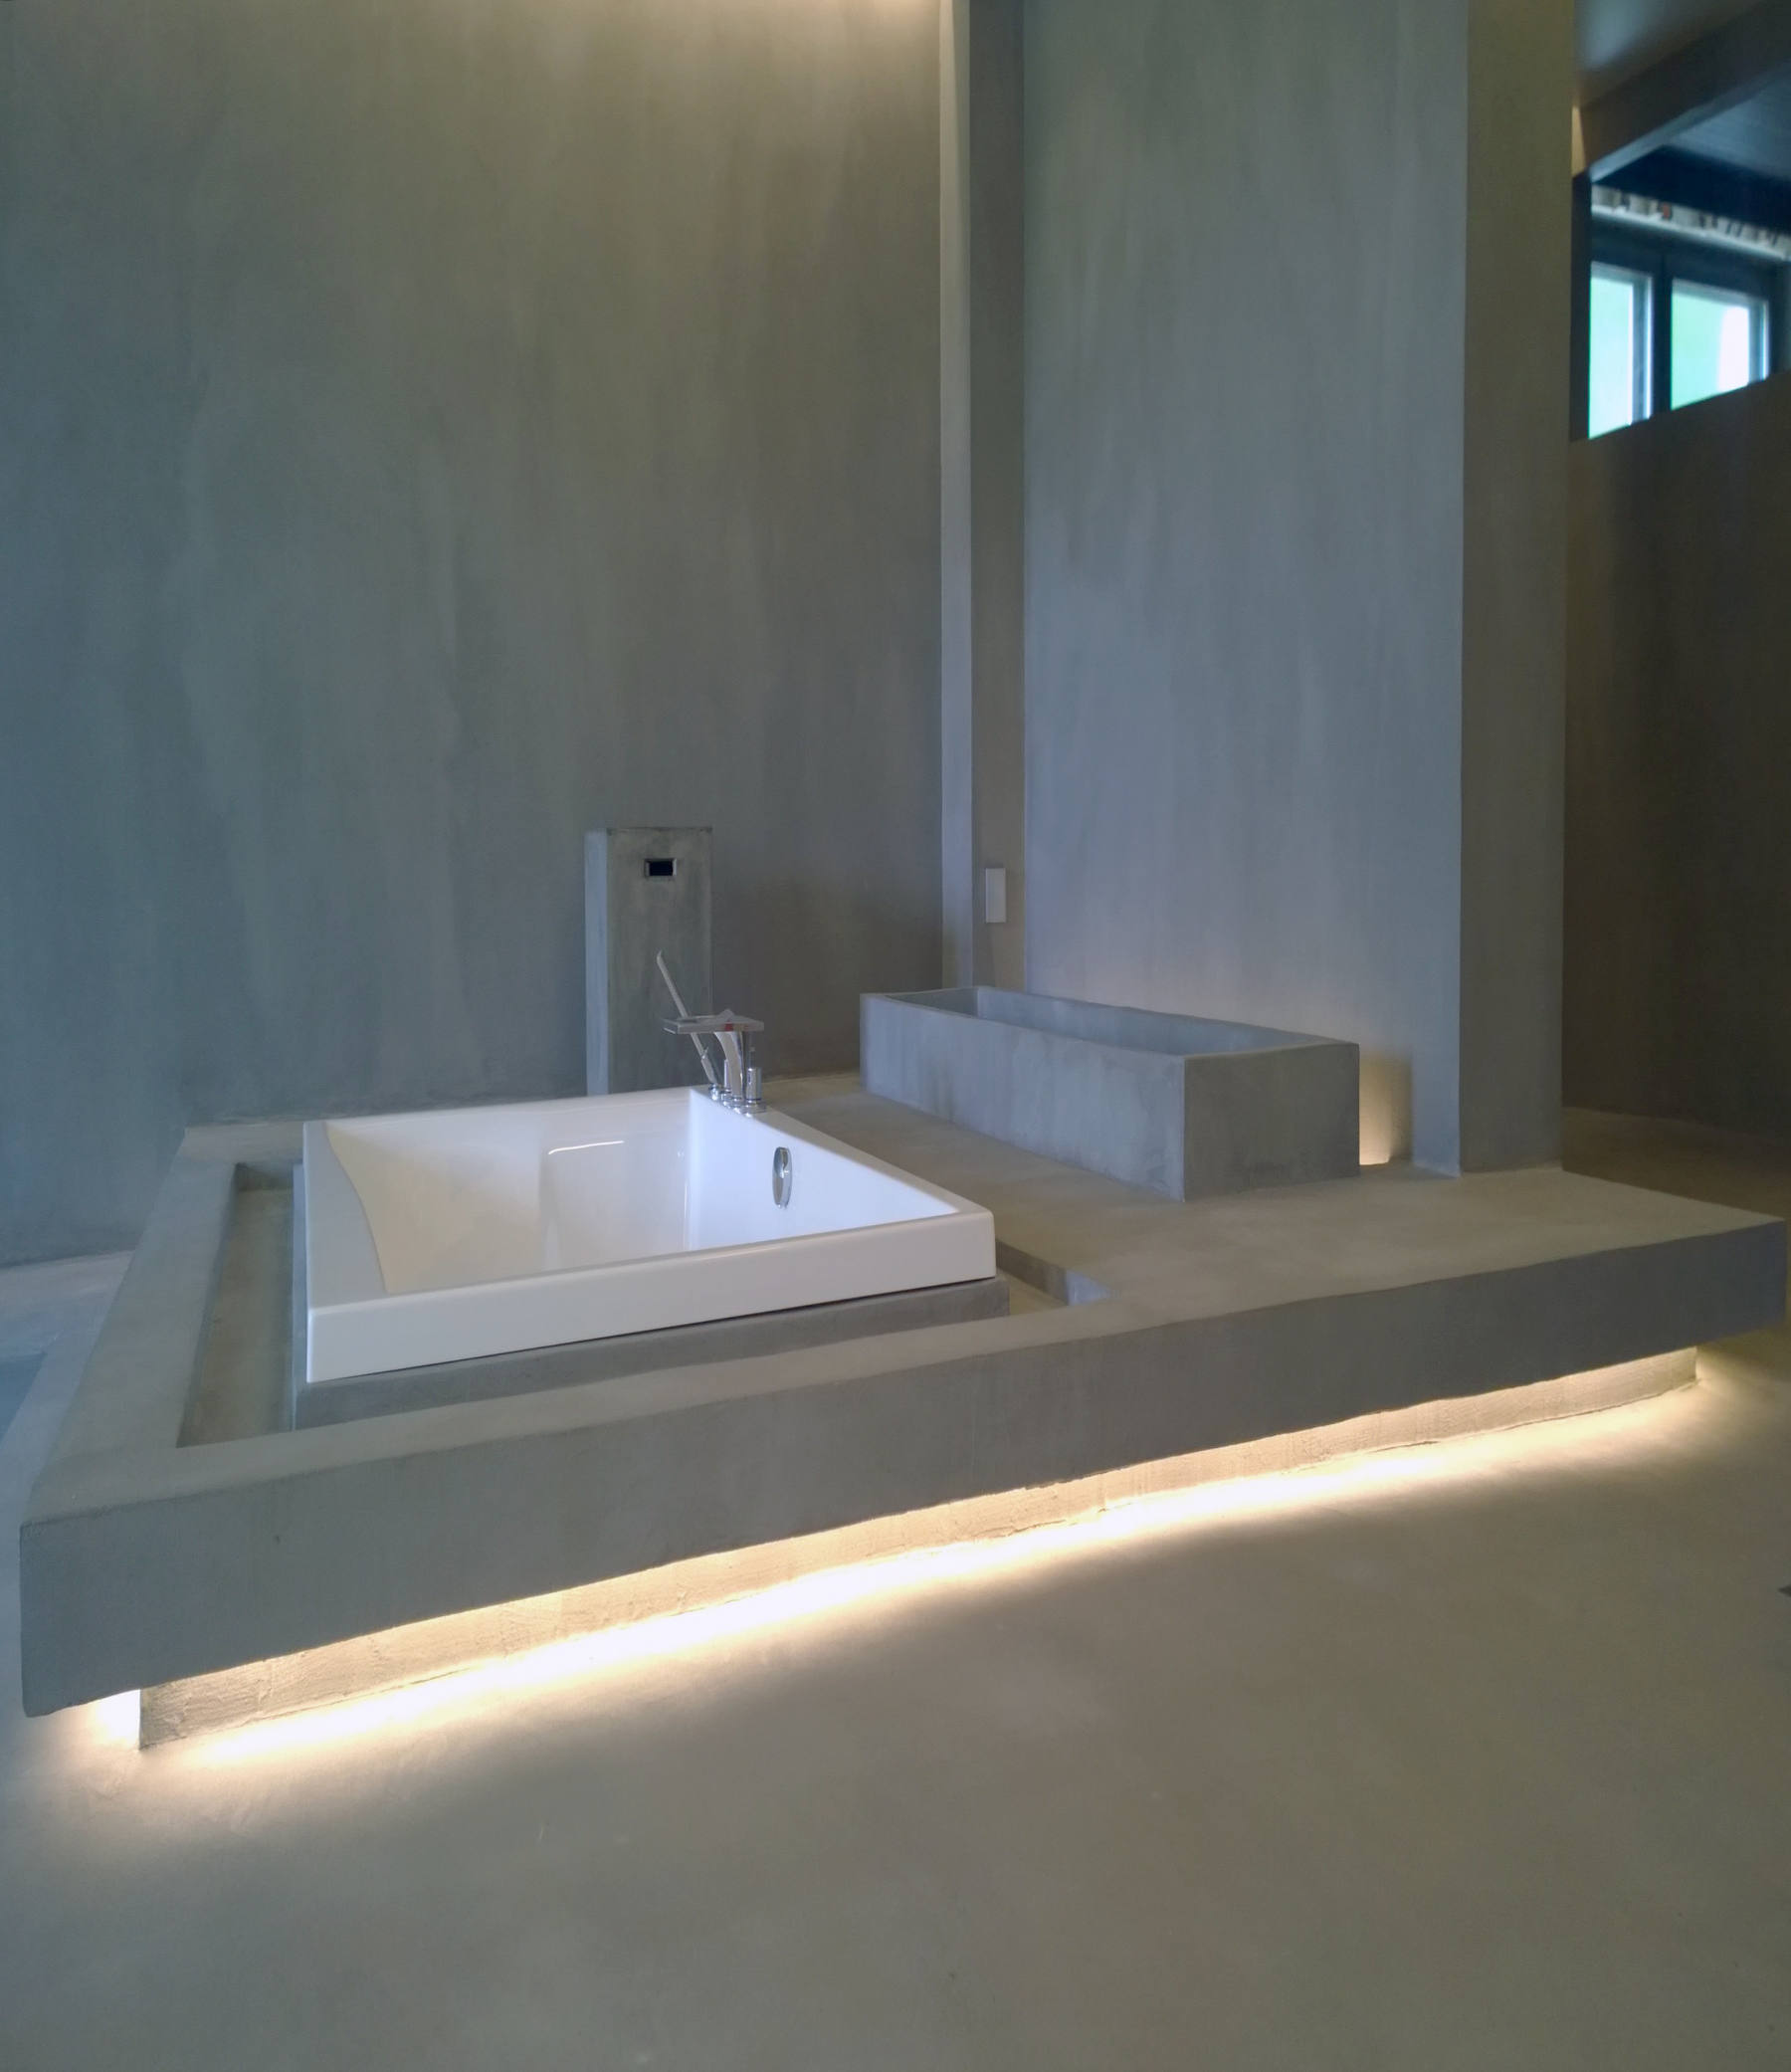 Casa con bañera de microcemento en Murcia 